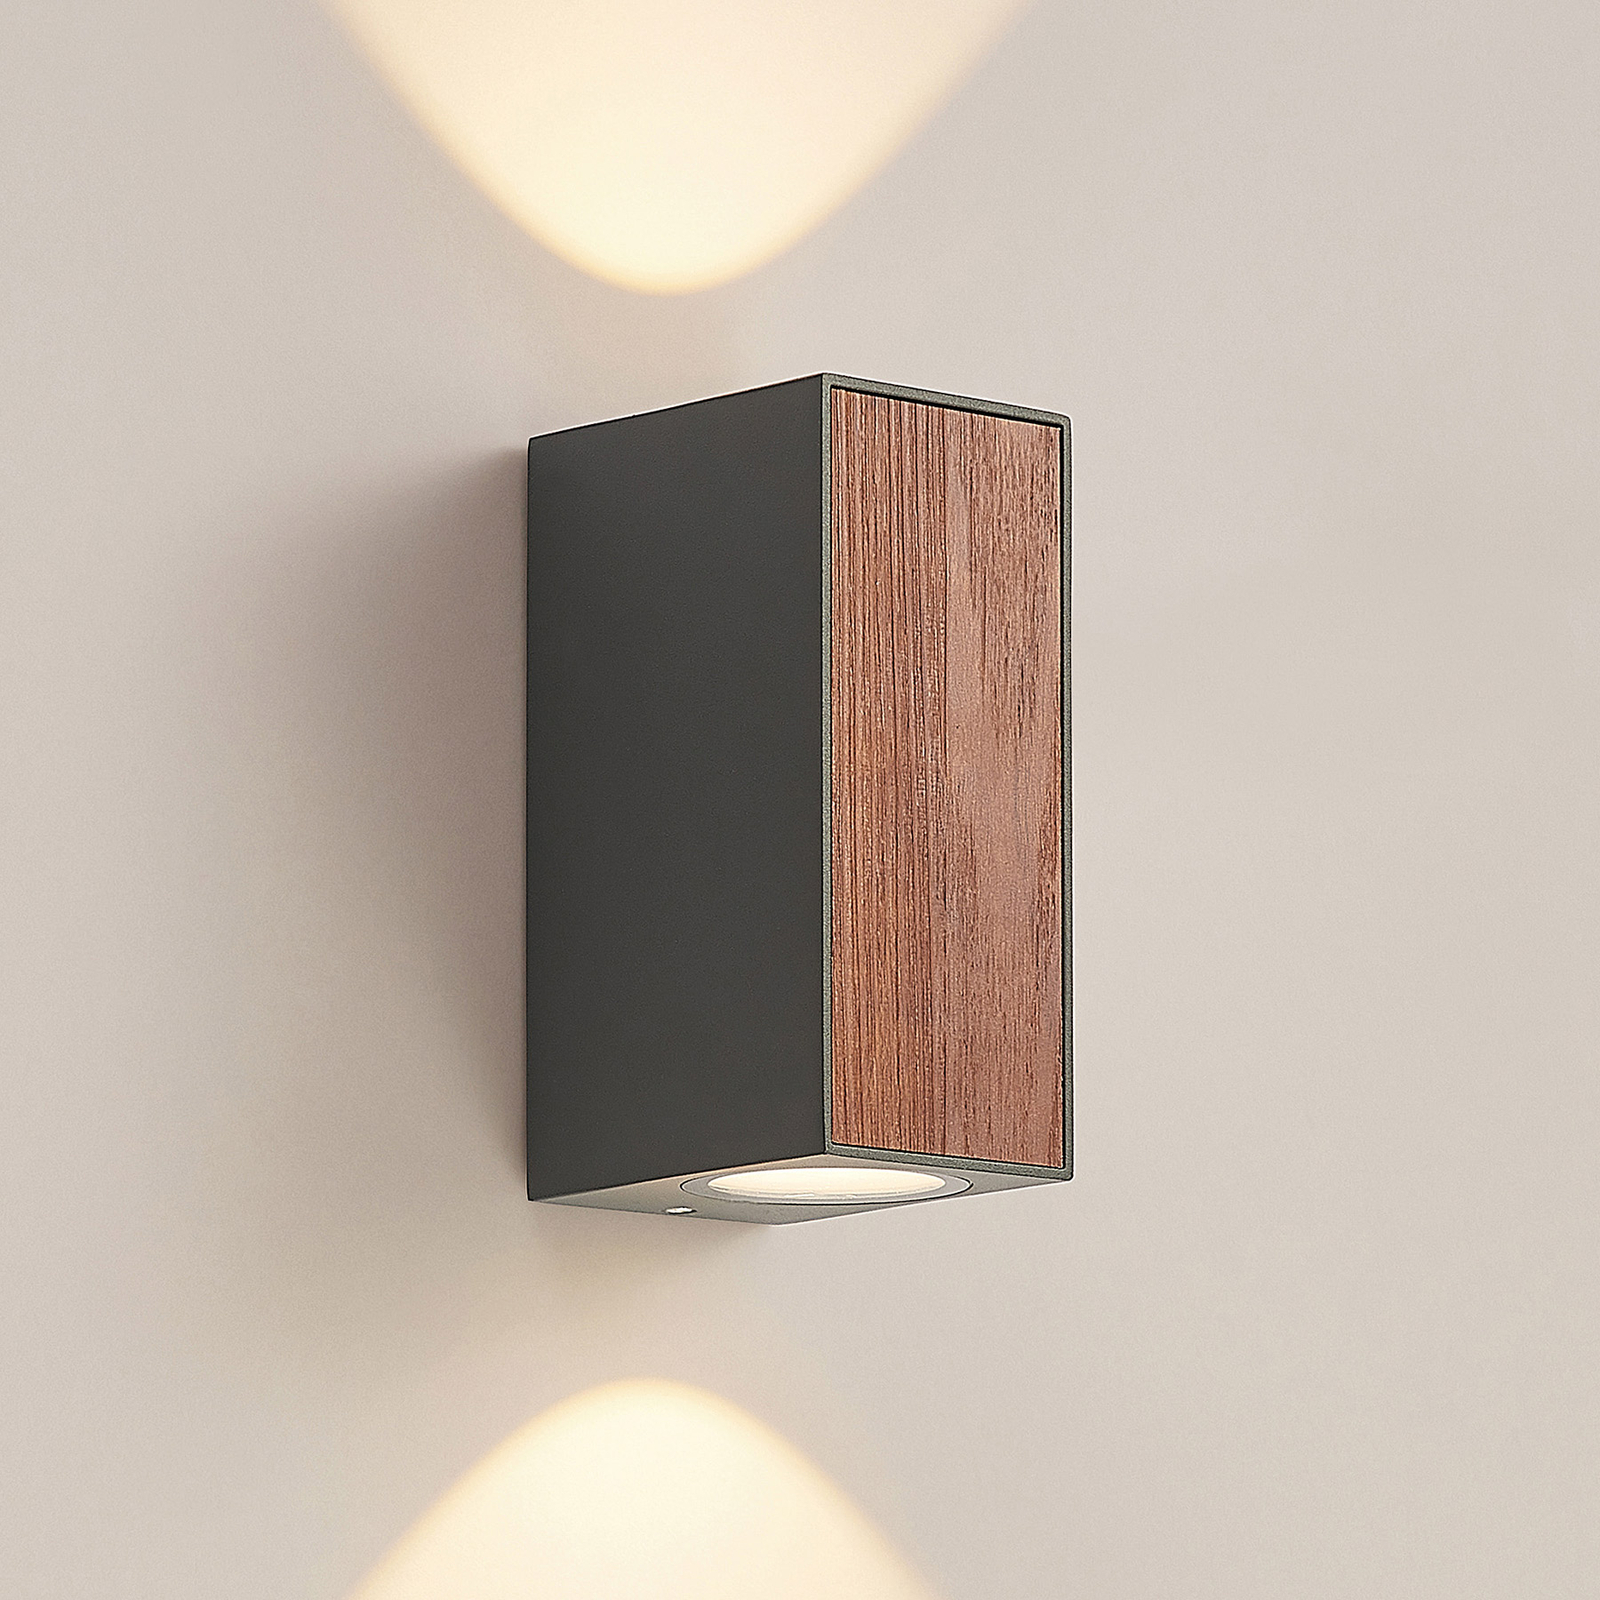 Lucande Cimala LED nástěnné světlo kvádr, 14,4cm